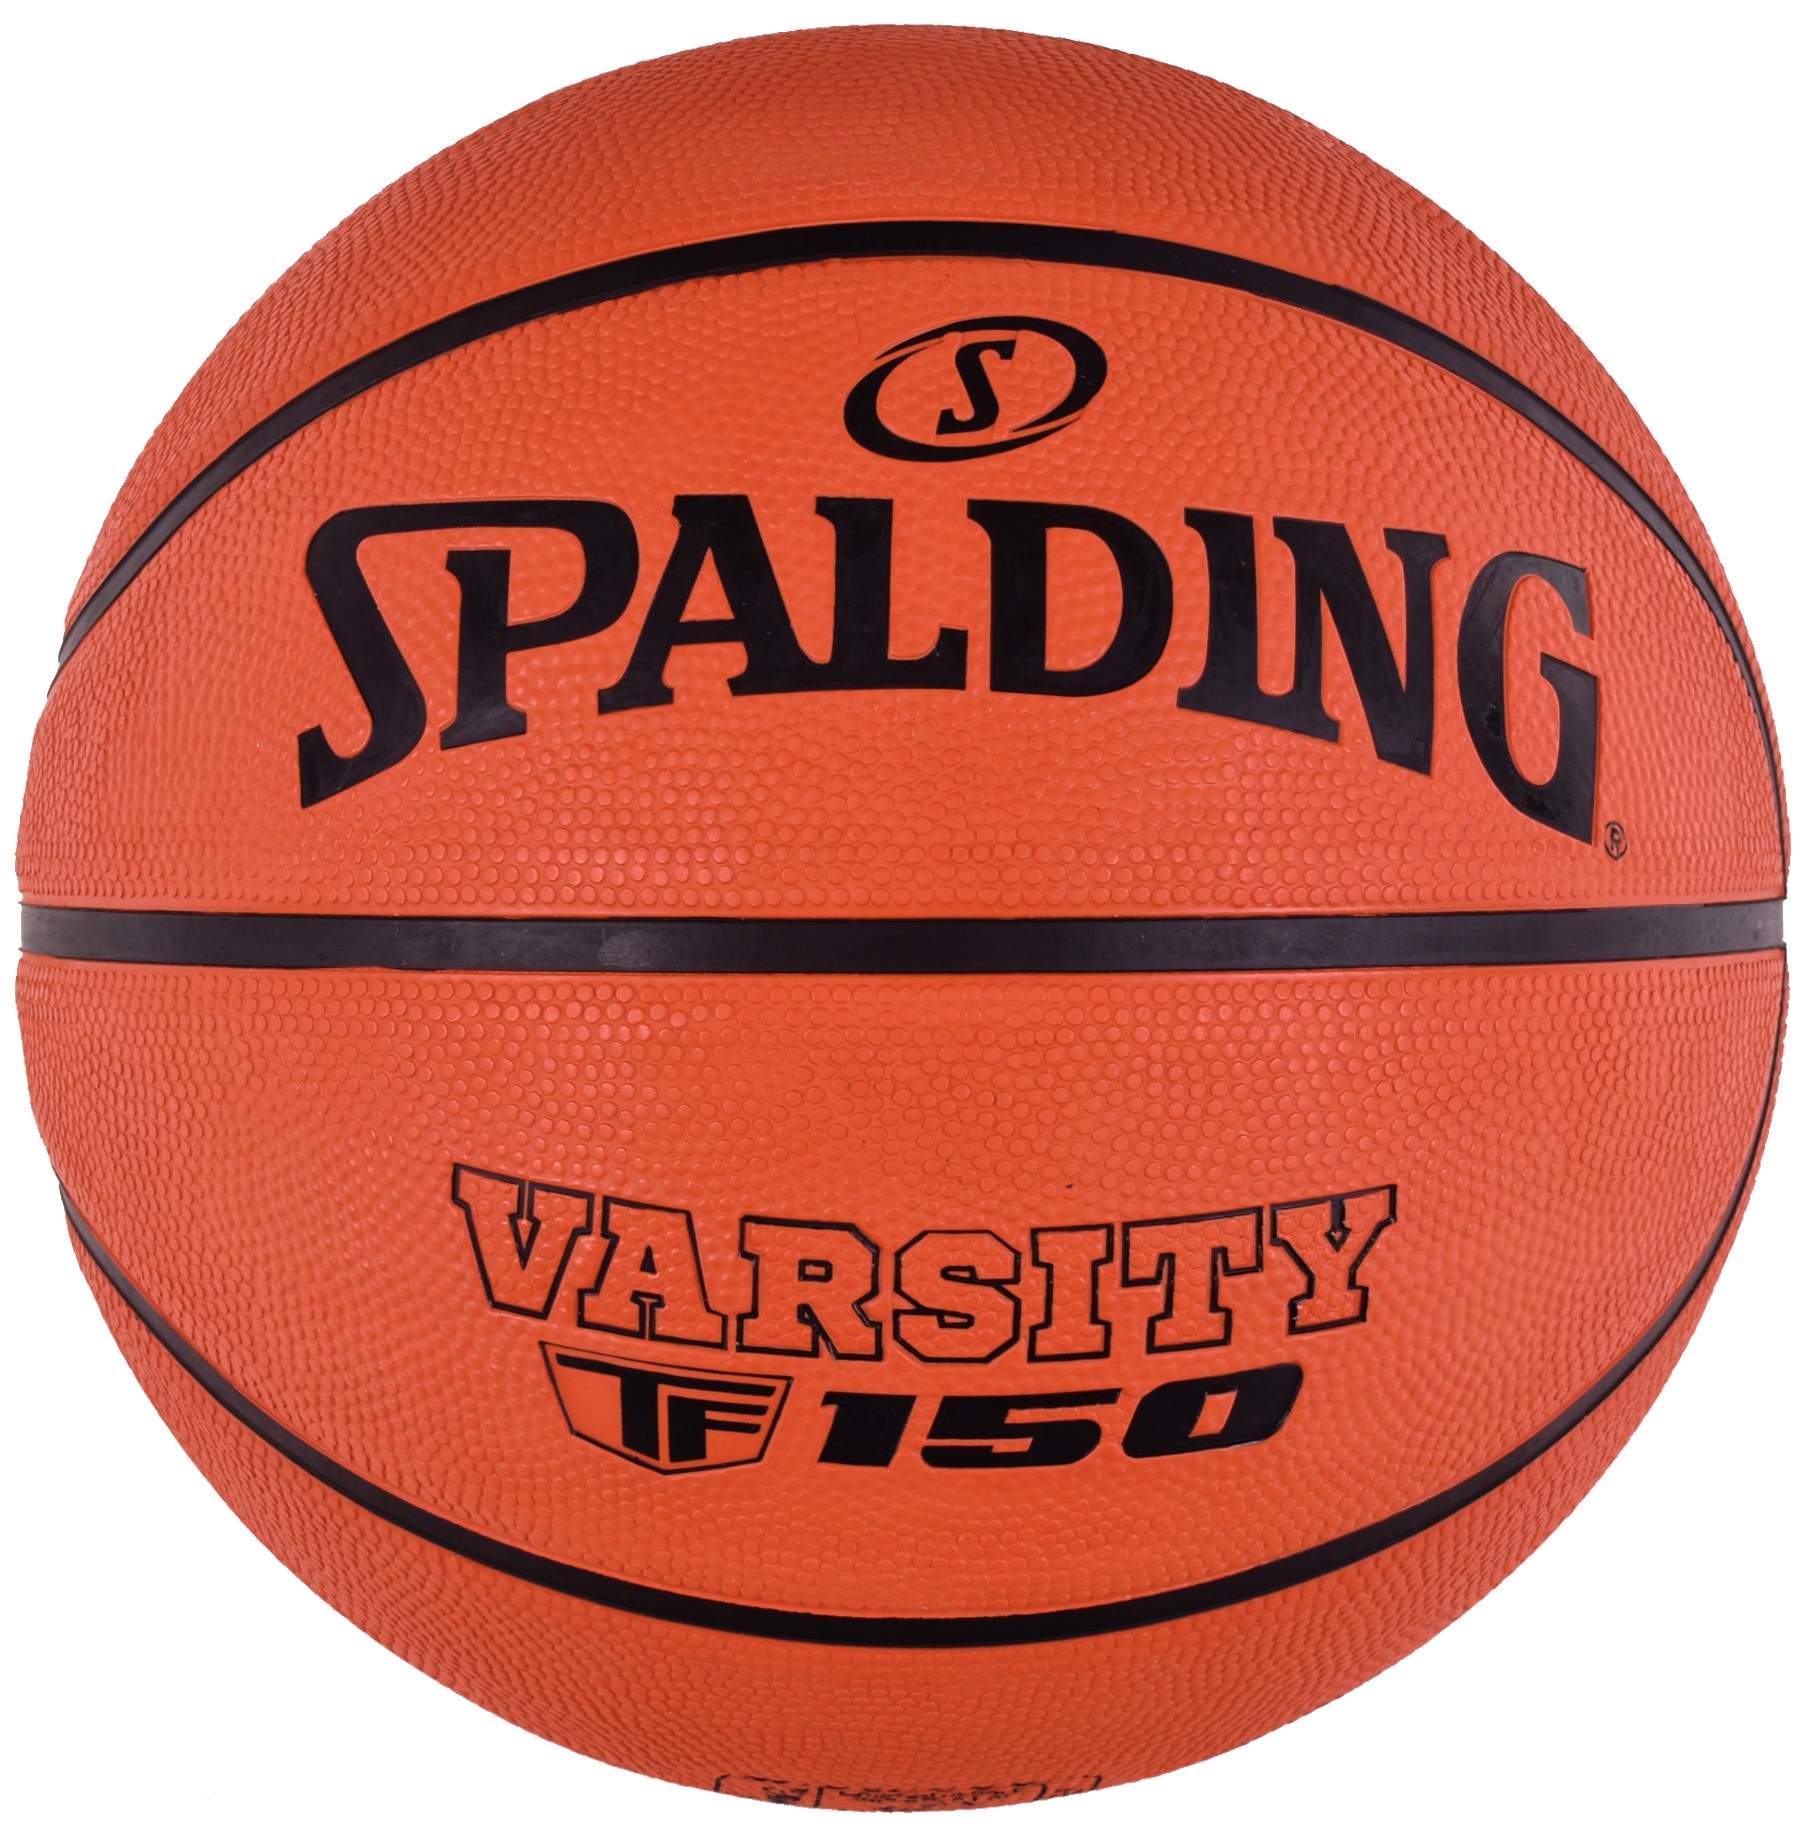 Баскетбольные мячи для детей. Spalding TF-150. Мяч Баск. №7 резин. Оранж.Gold Cup. Мячи баскетбольная DFC ball7p. Мяч баскетбольный Atemi bb950 , размер 7.